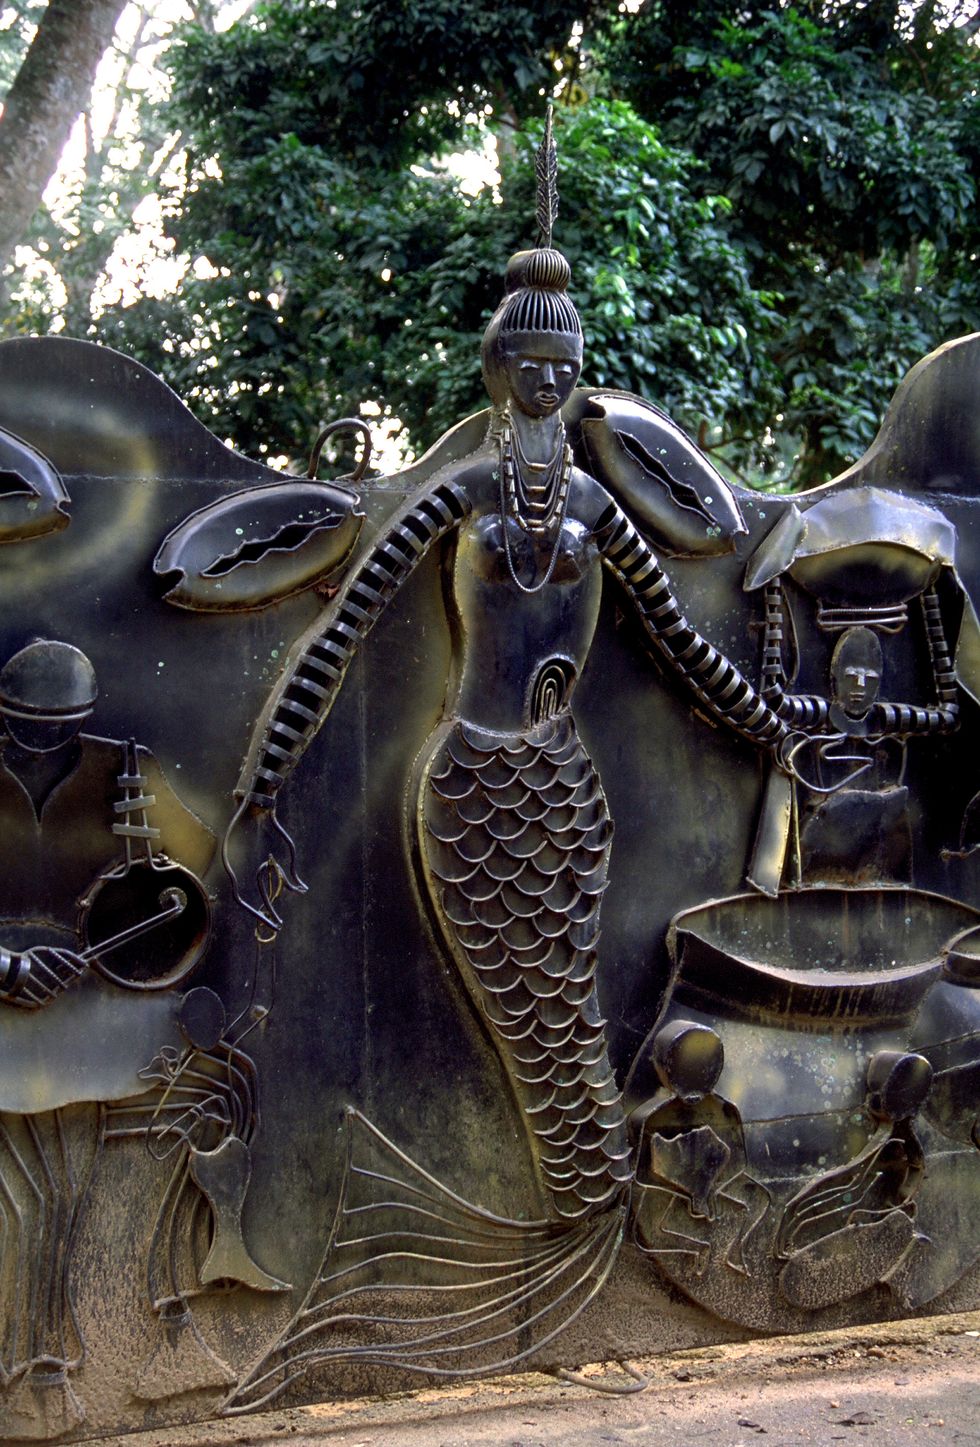 the little mermaid le sirene esistono anche nella cultura nera